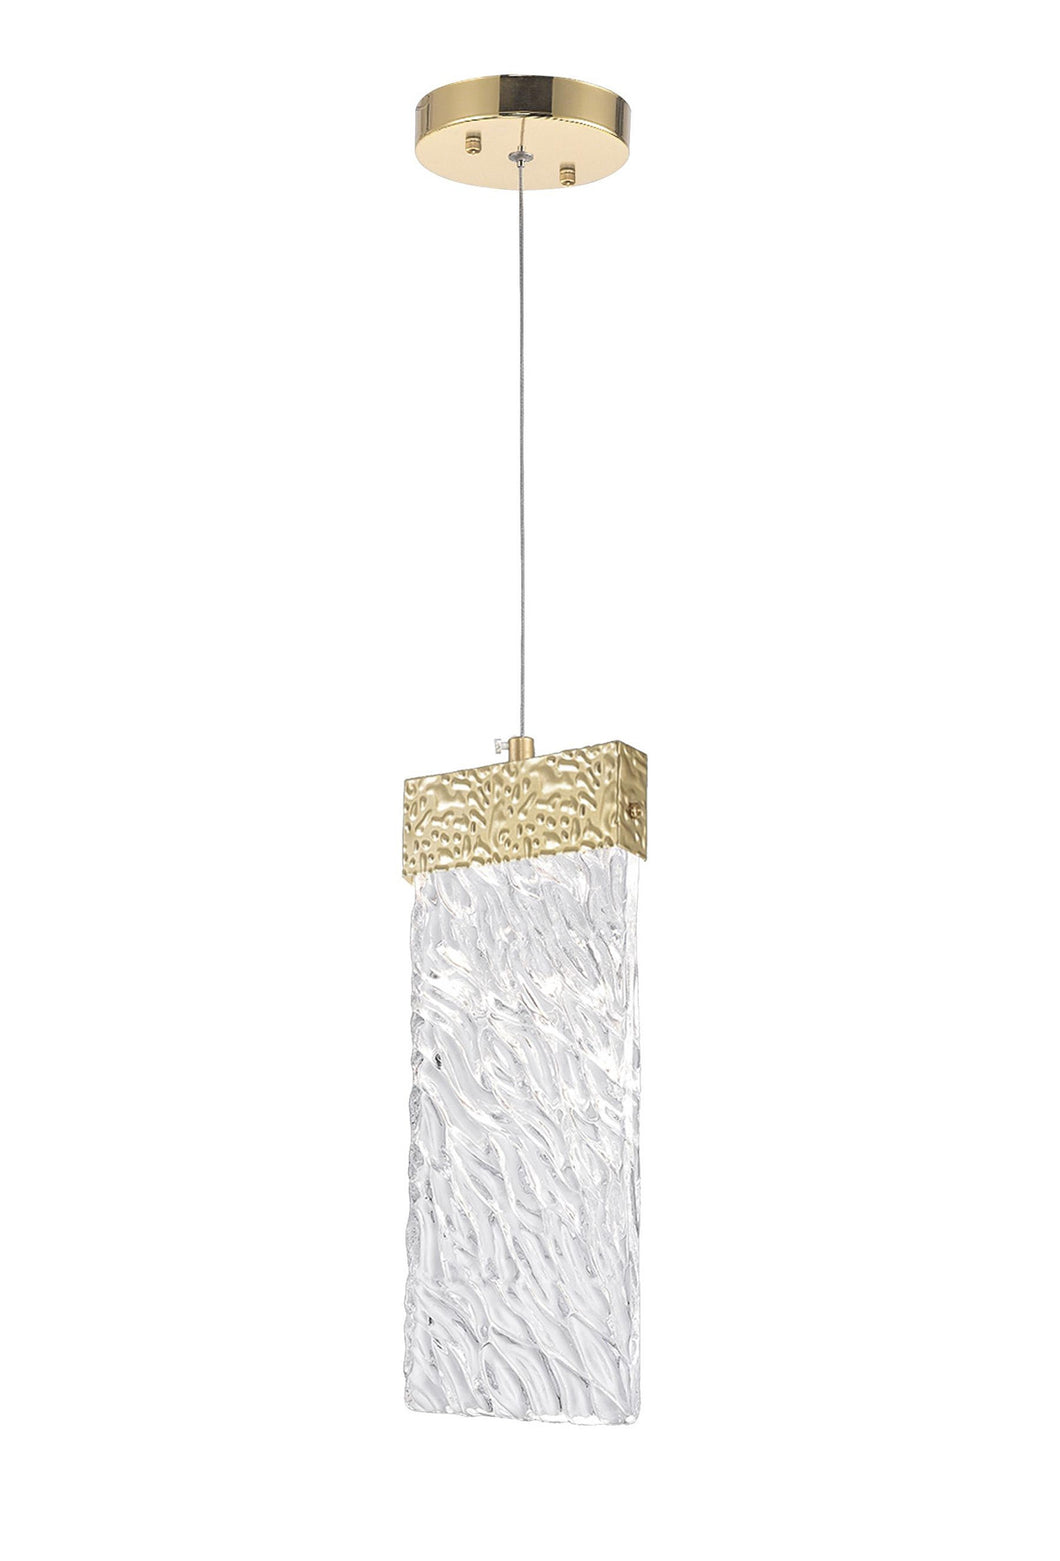 LED Pendant with Gold Leaf Finish